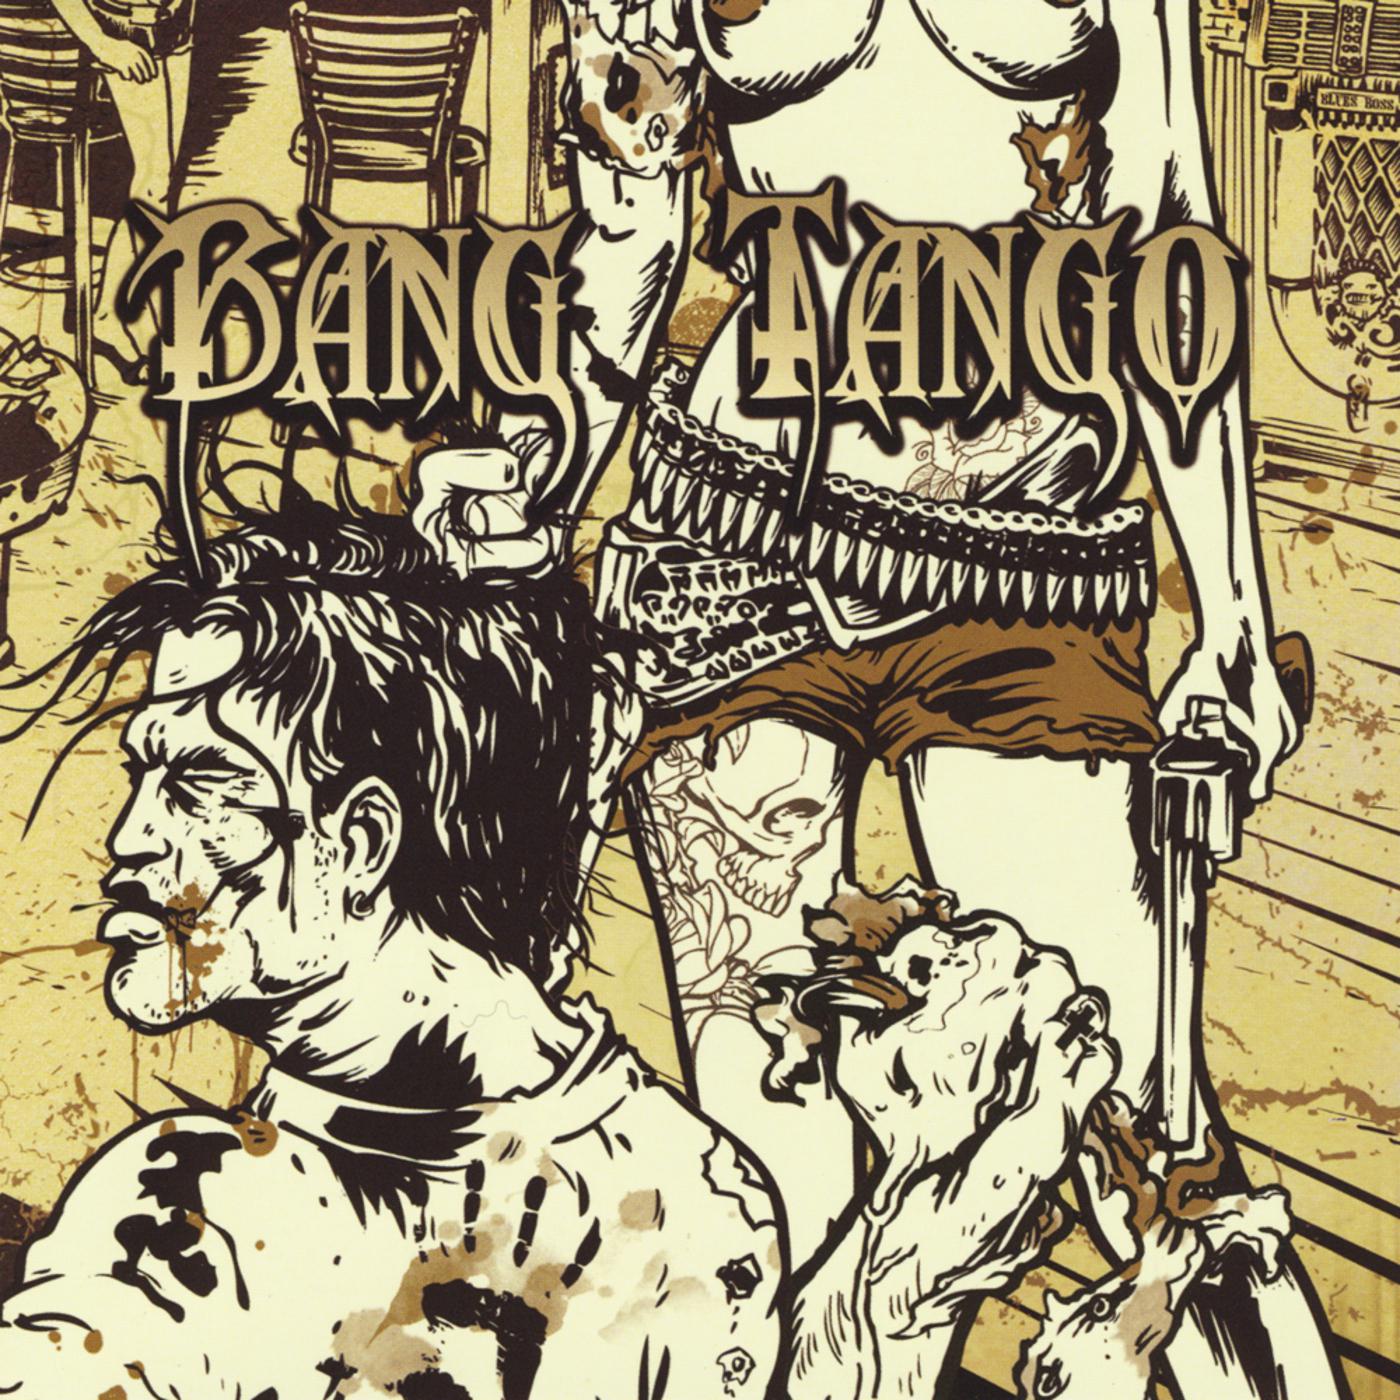 Bang Tango - Bring On the World